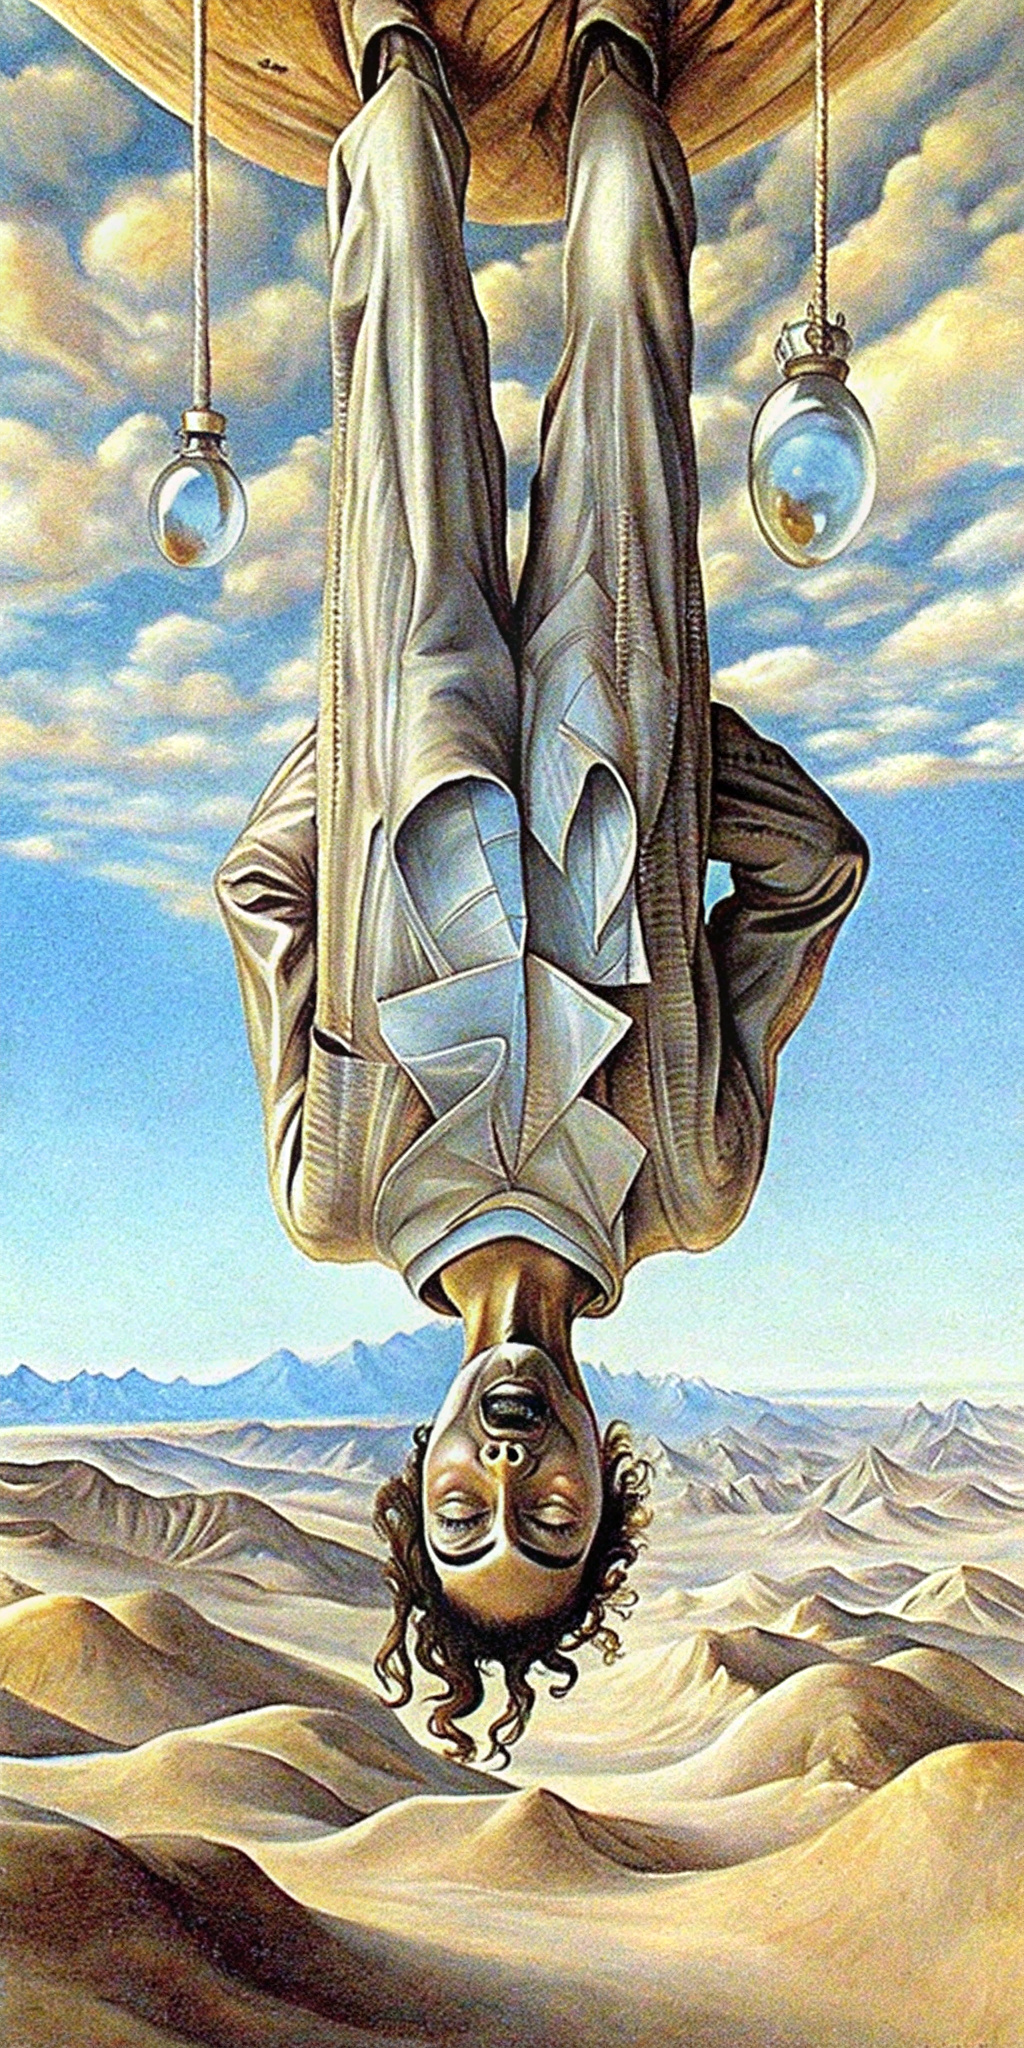 Crea una imagen de: un hombre colgado cabeza abajo, en un desierto. Estilo Salvador Dalí.